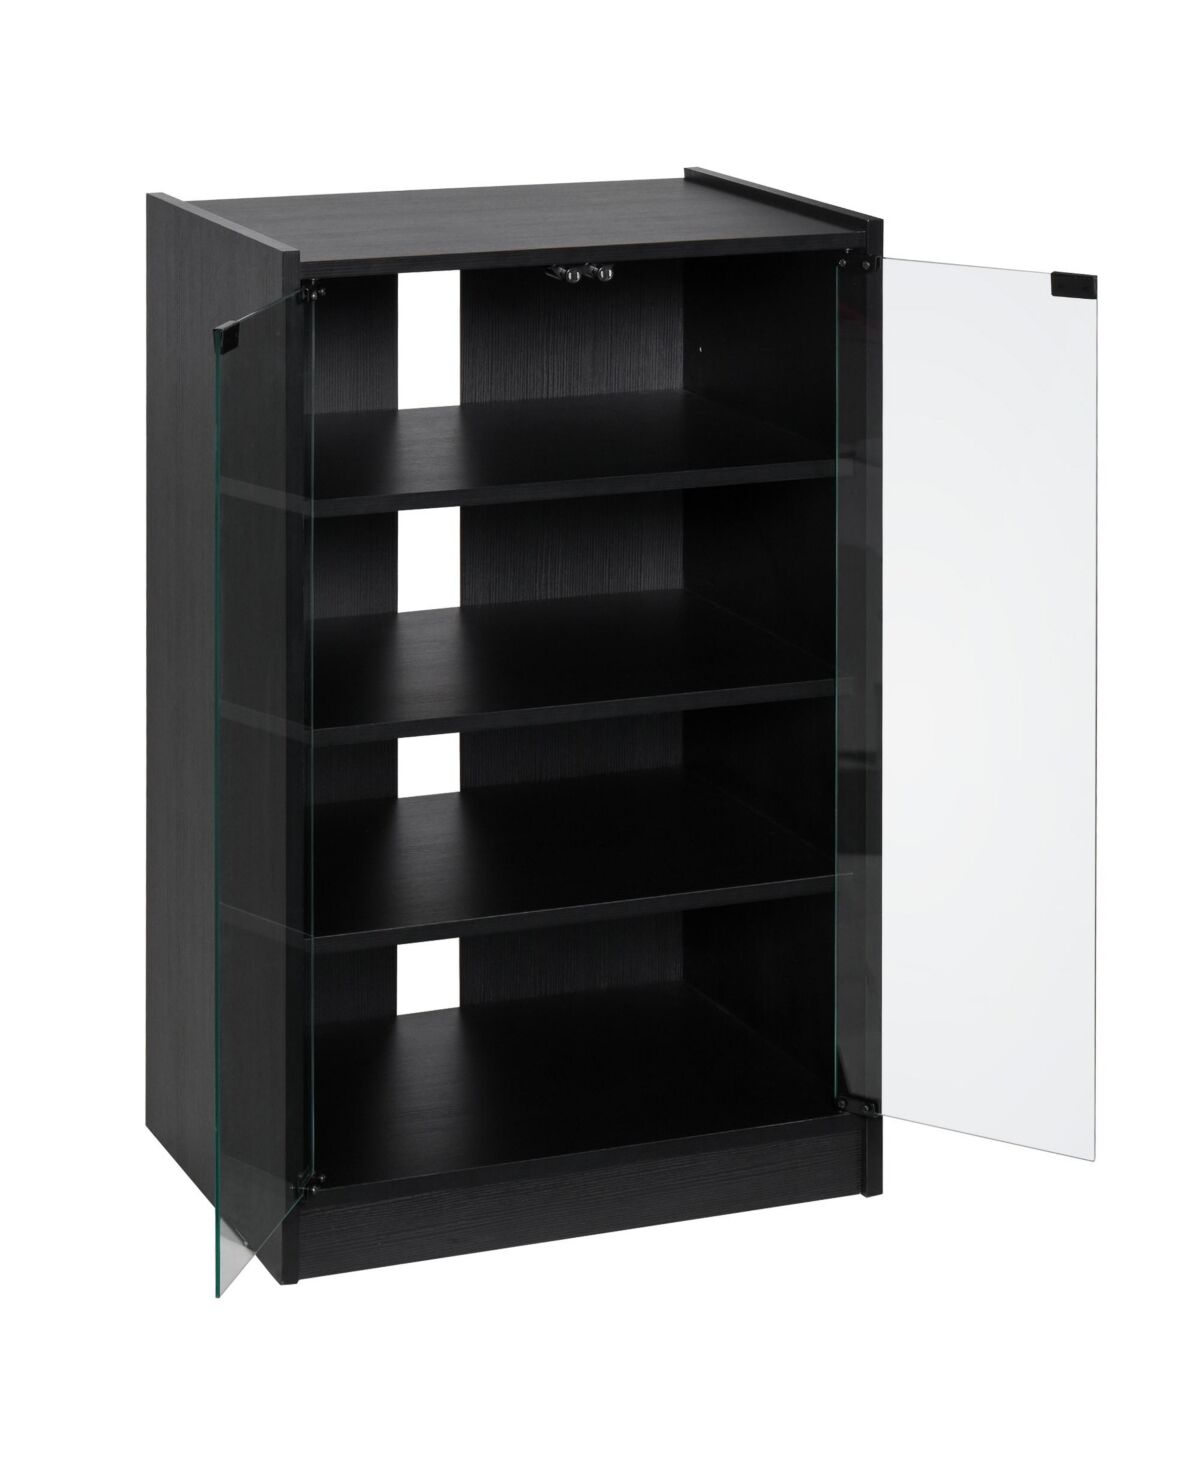 Homcom 5-Tier Media Stand Cabinet w/3-Level Adjustable Shelves & Tempered Glass - Black